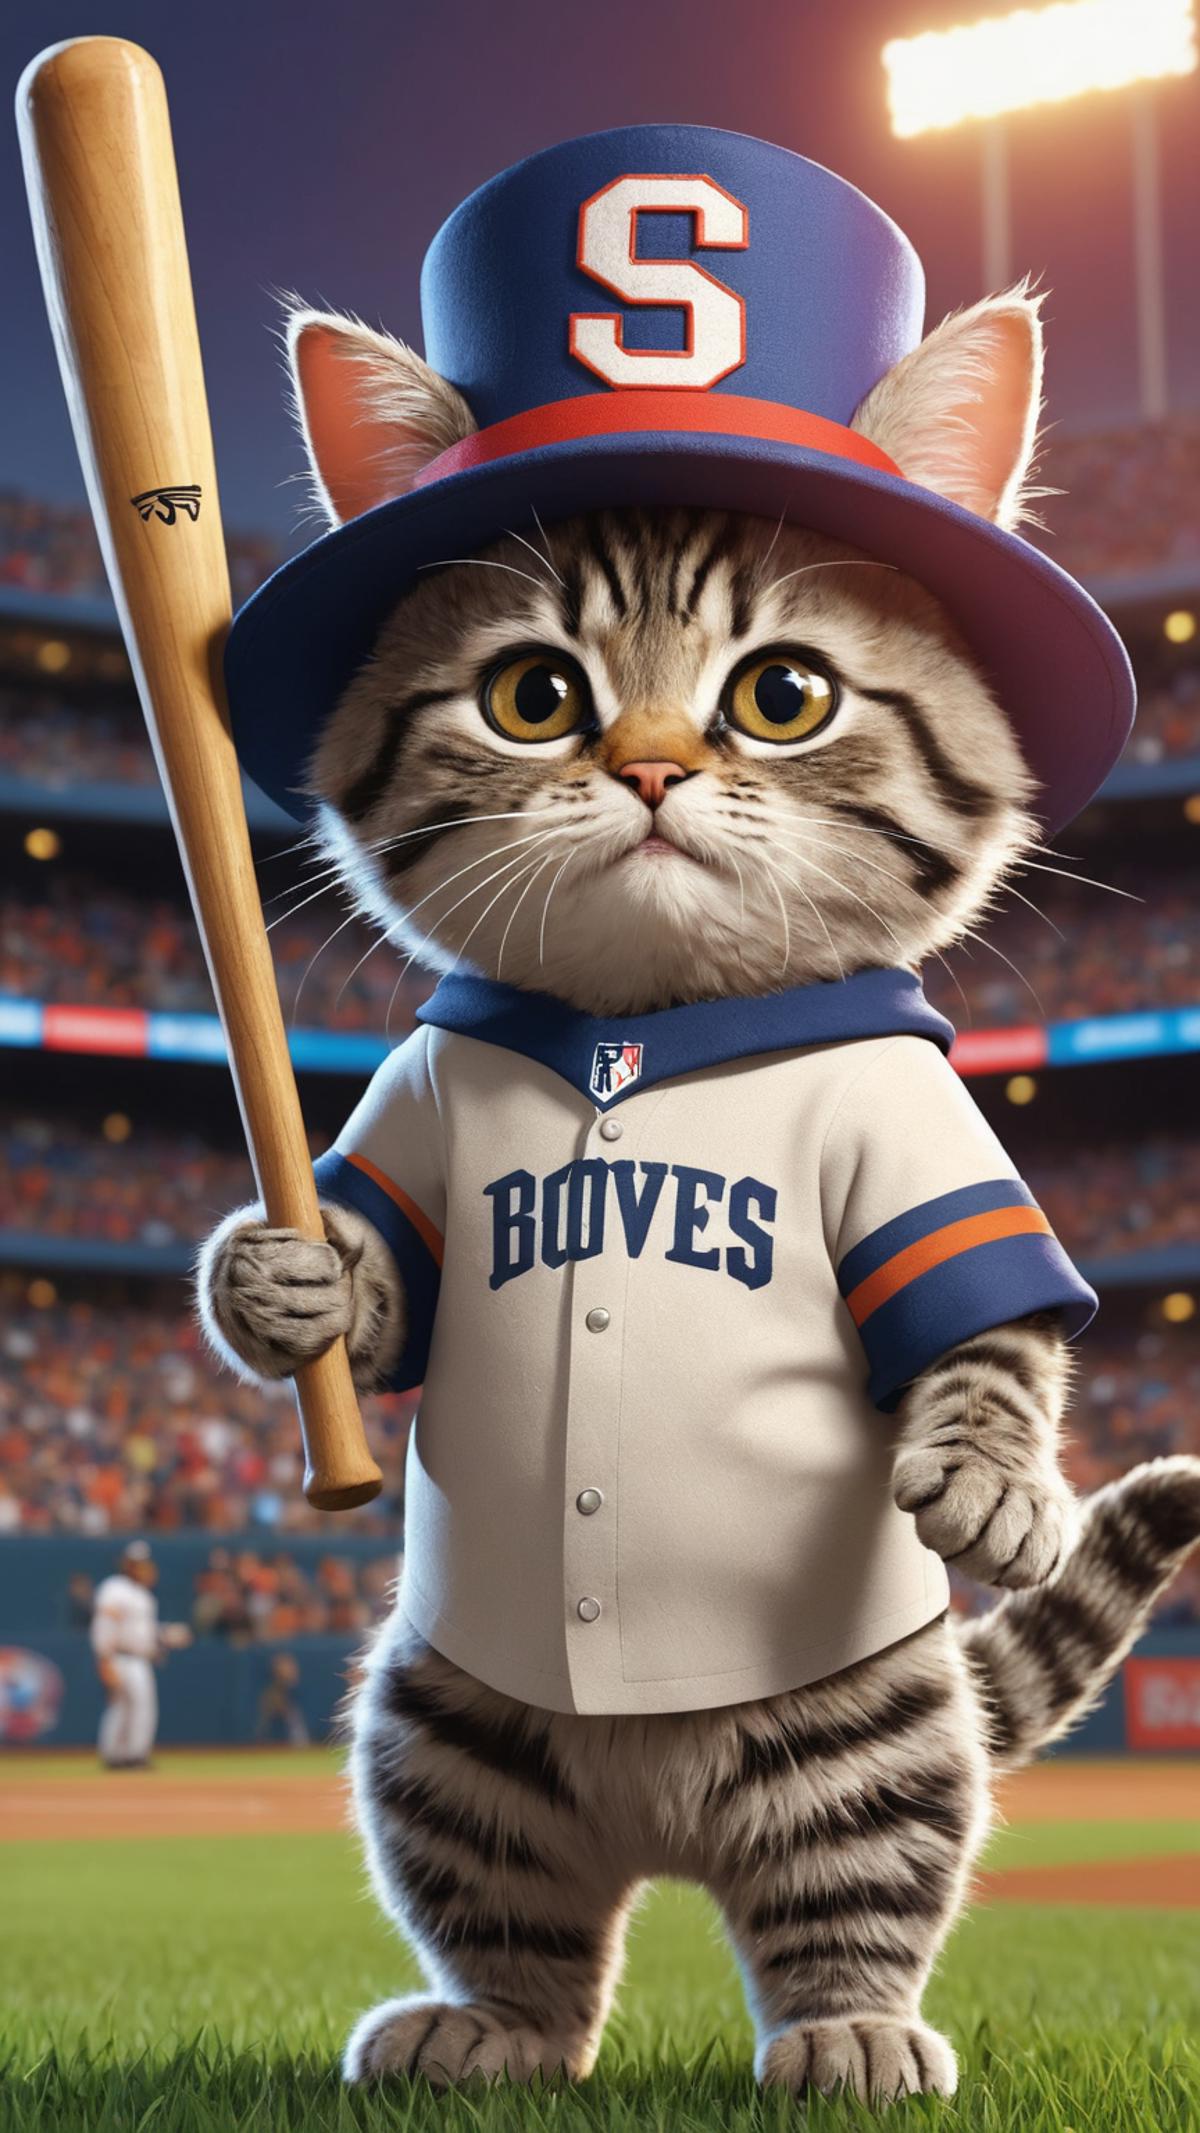 A cartoon cat wearing a baseball uniform and holding a bat.